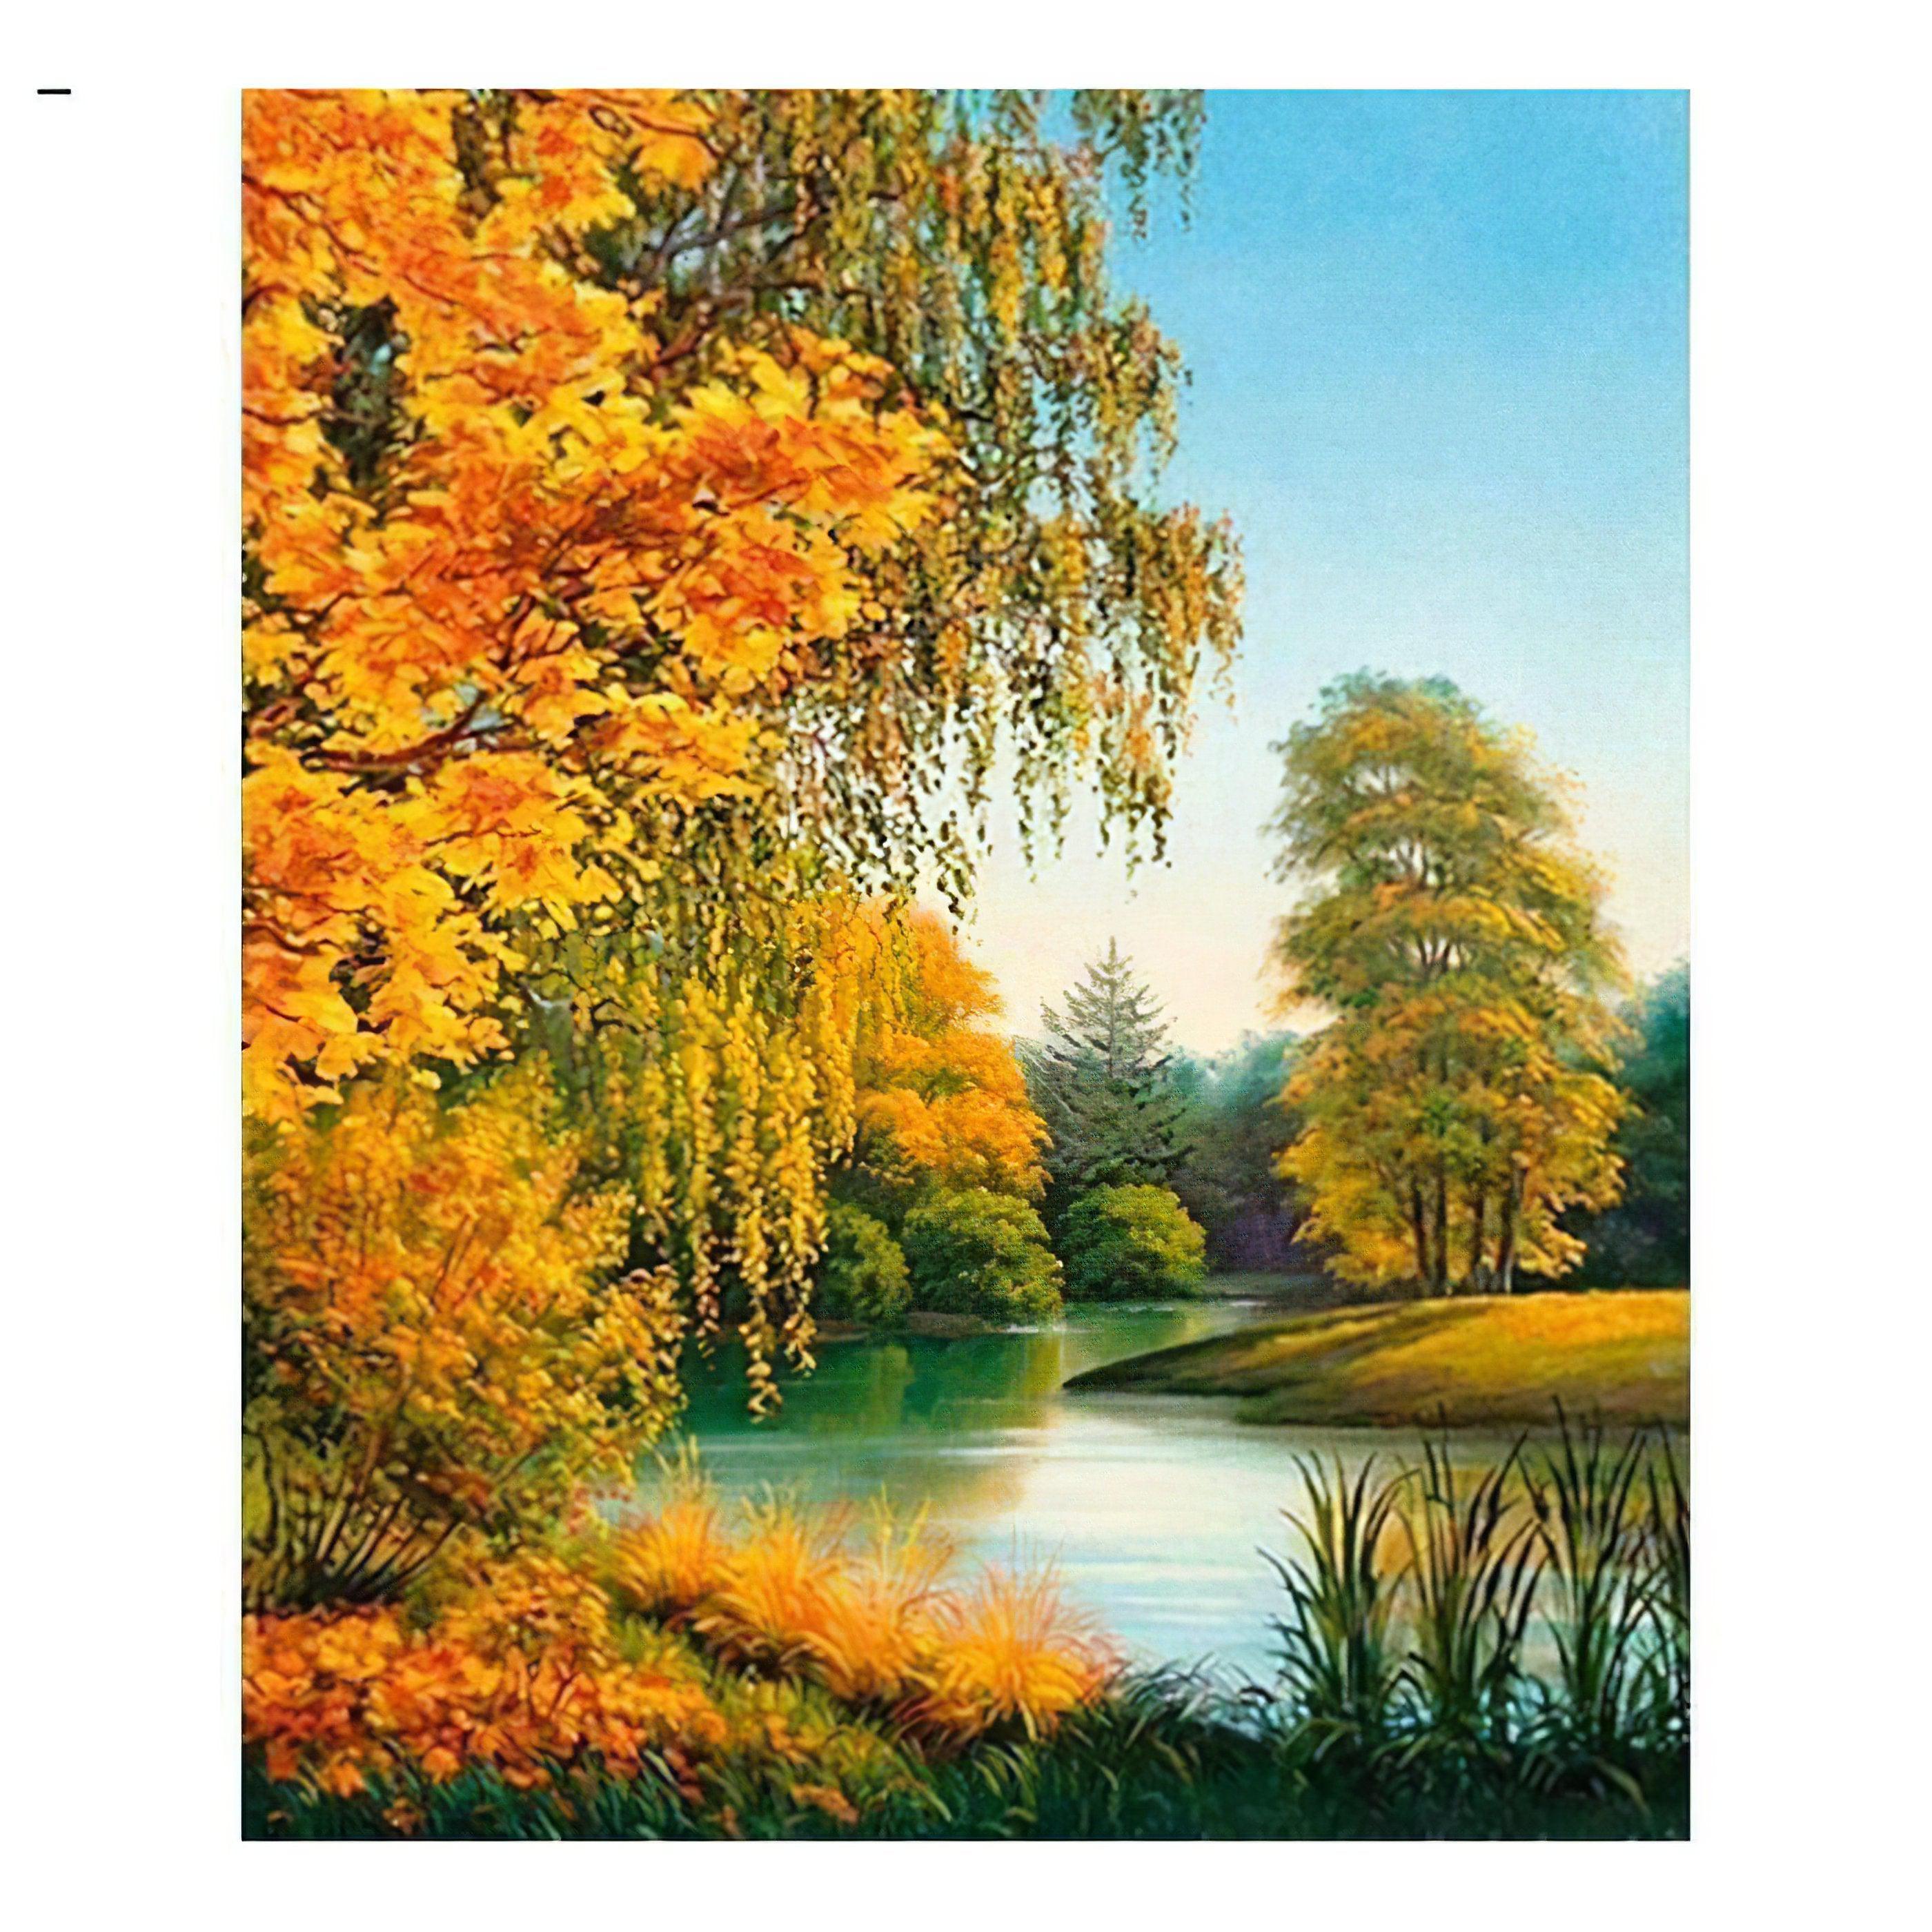 Autumn Landscape: Rich hues paint the season's warmth Autumn Landscape - Diamondartlove